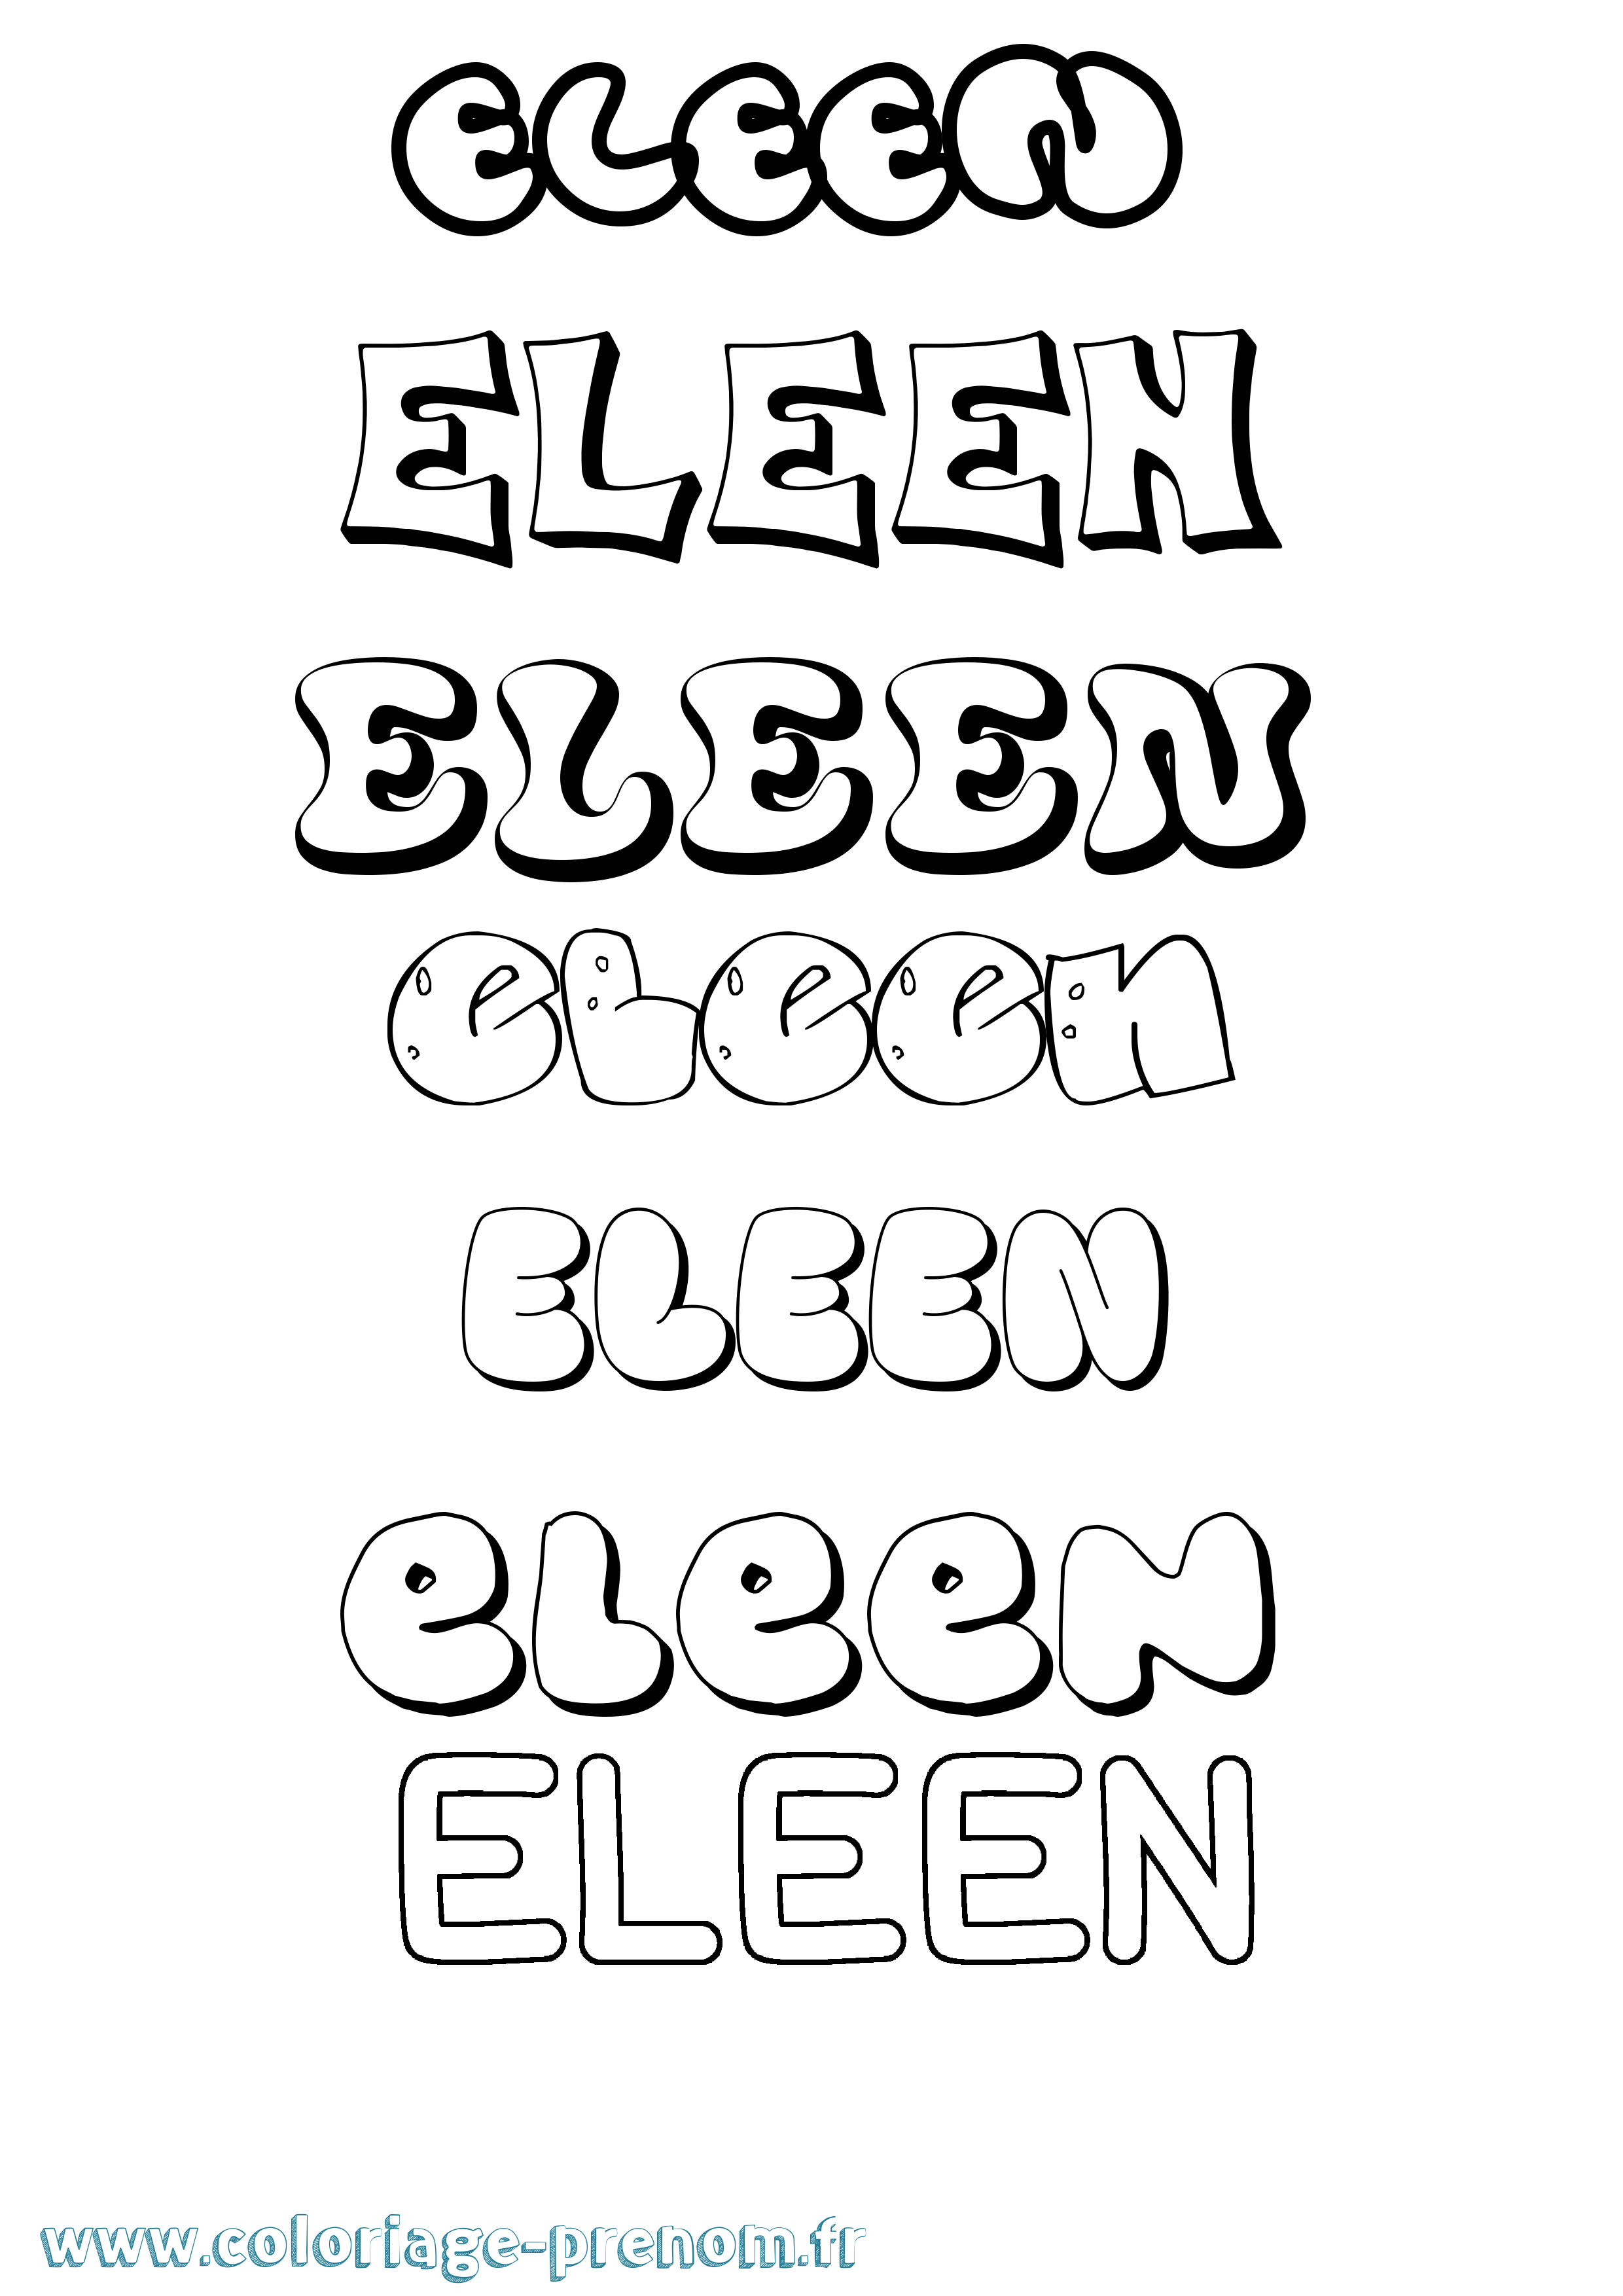 Coloriage prénom Eleen Bubble